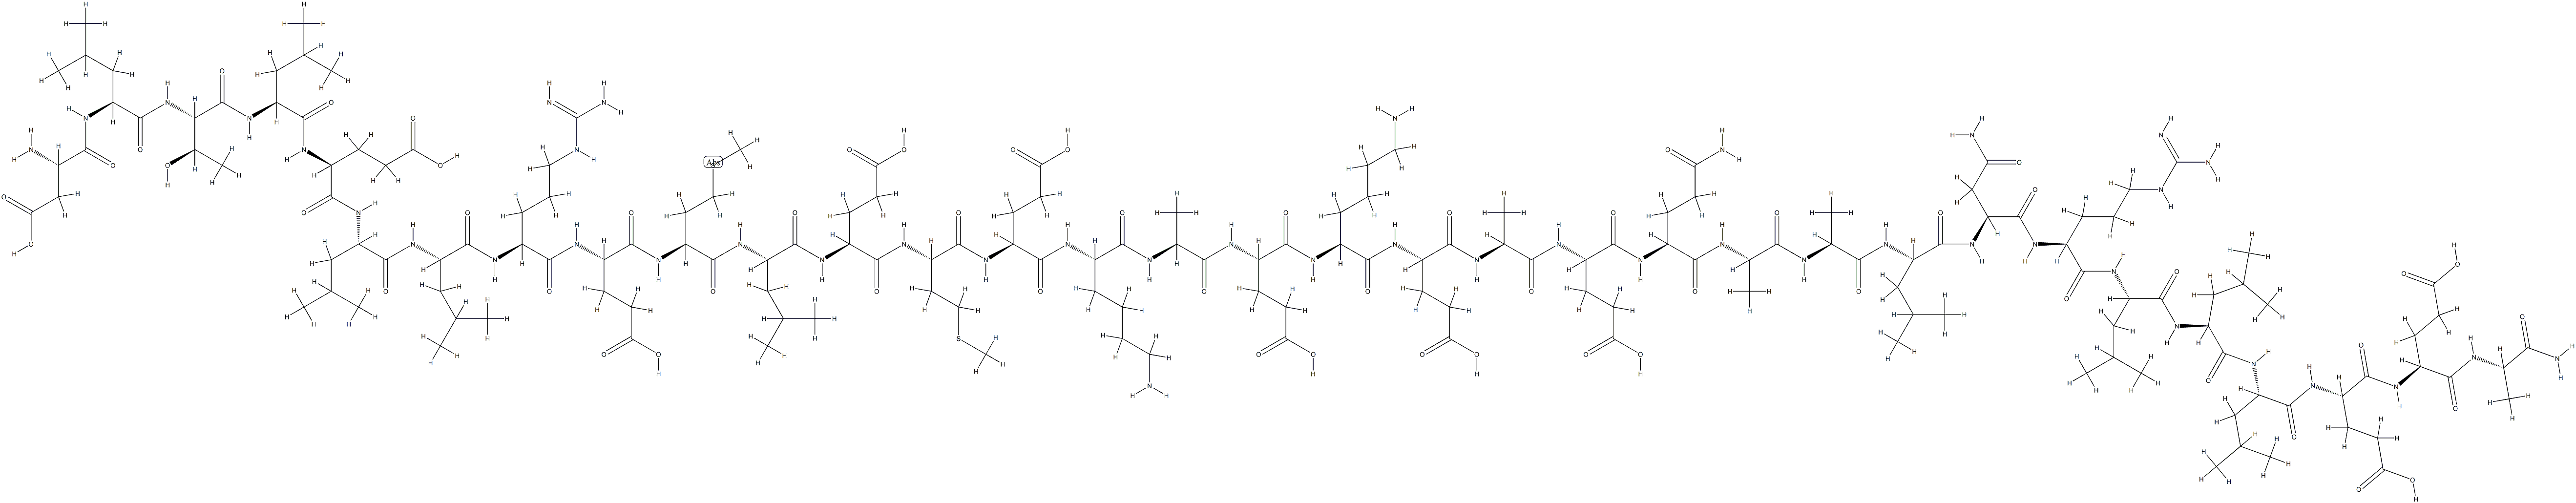 corticotropin releasing hormone (9-41)